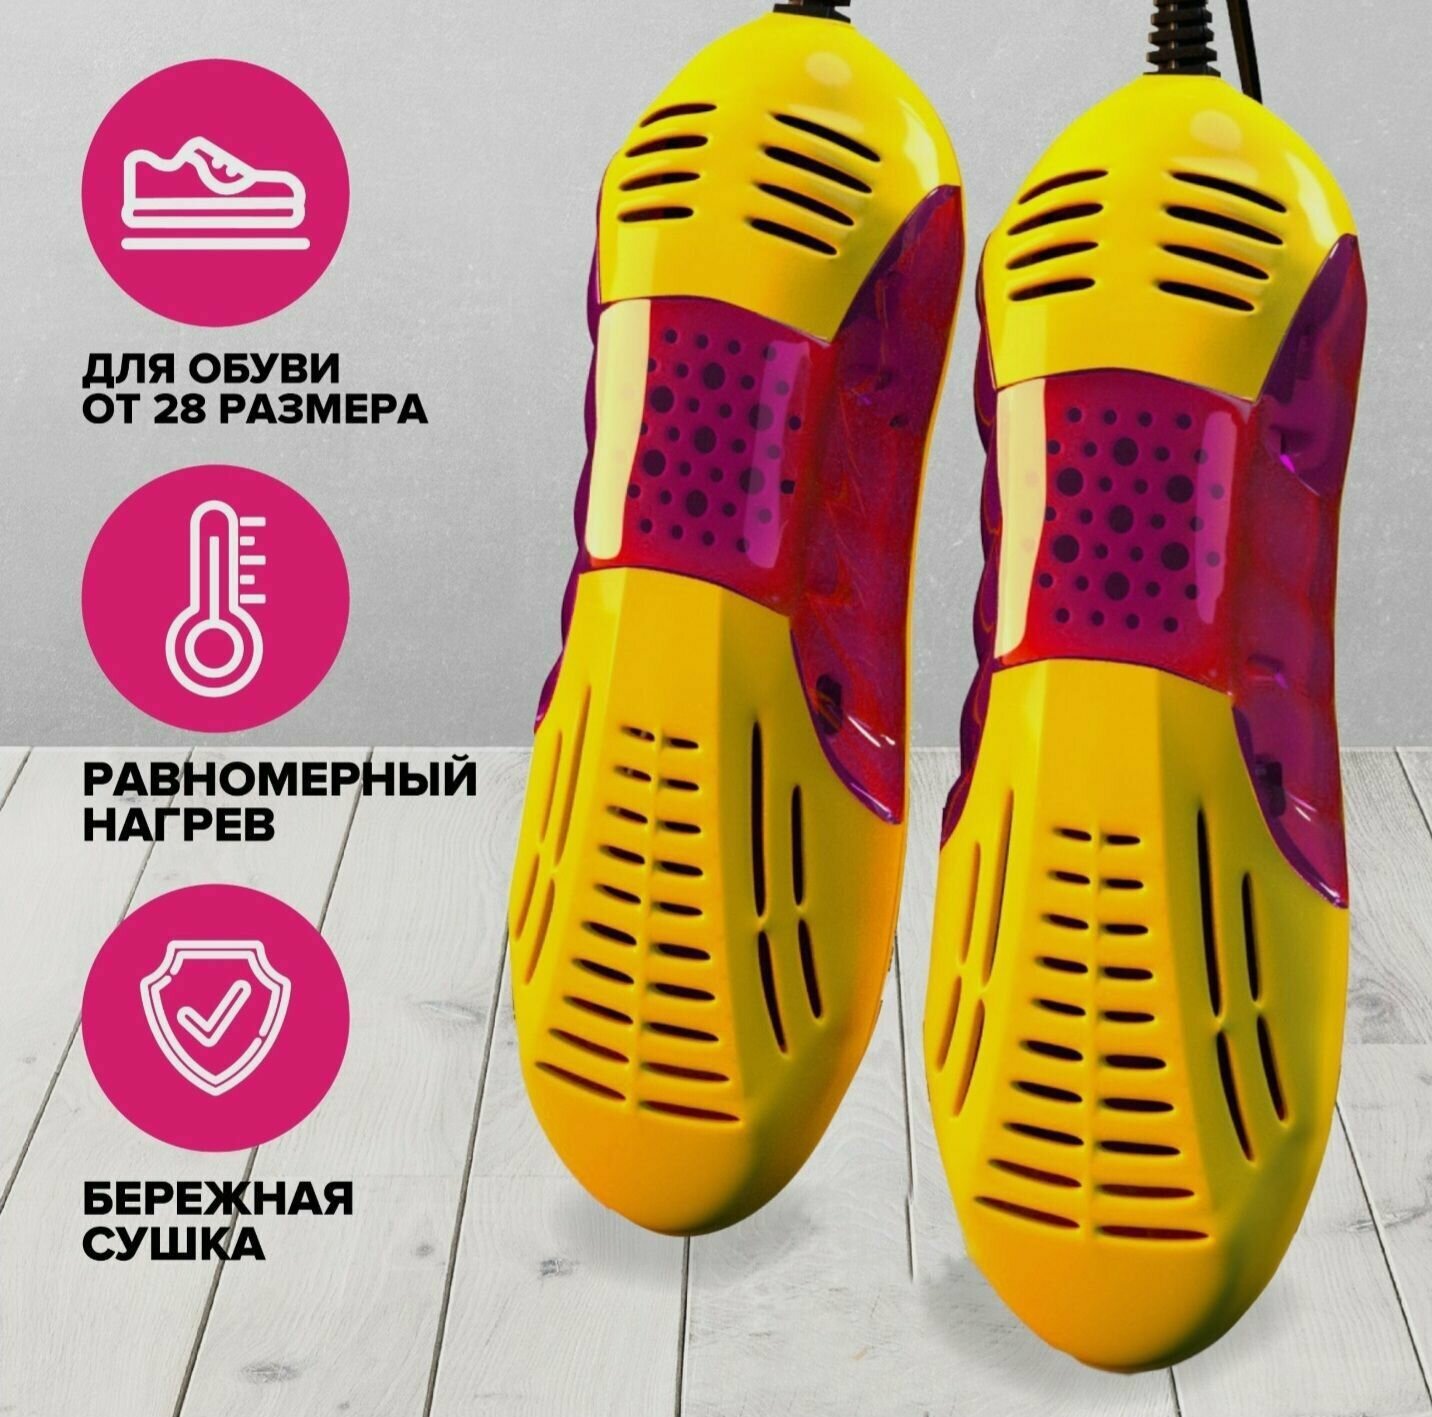 Сушилка для обуви электрическая светодиодная. Электросушитель обуви с нагревом до 60 градусов. Цвет желто-красный.